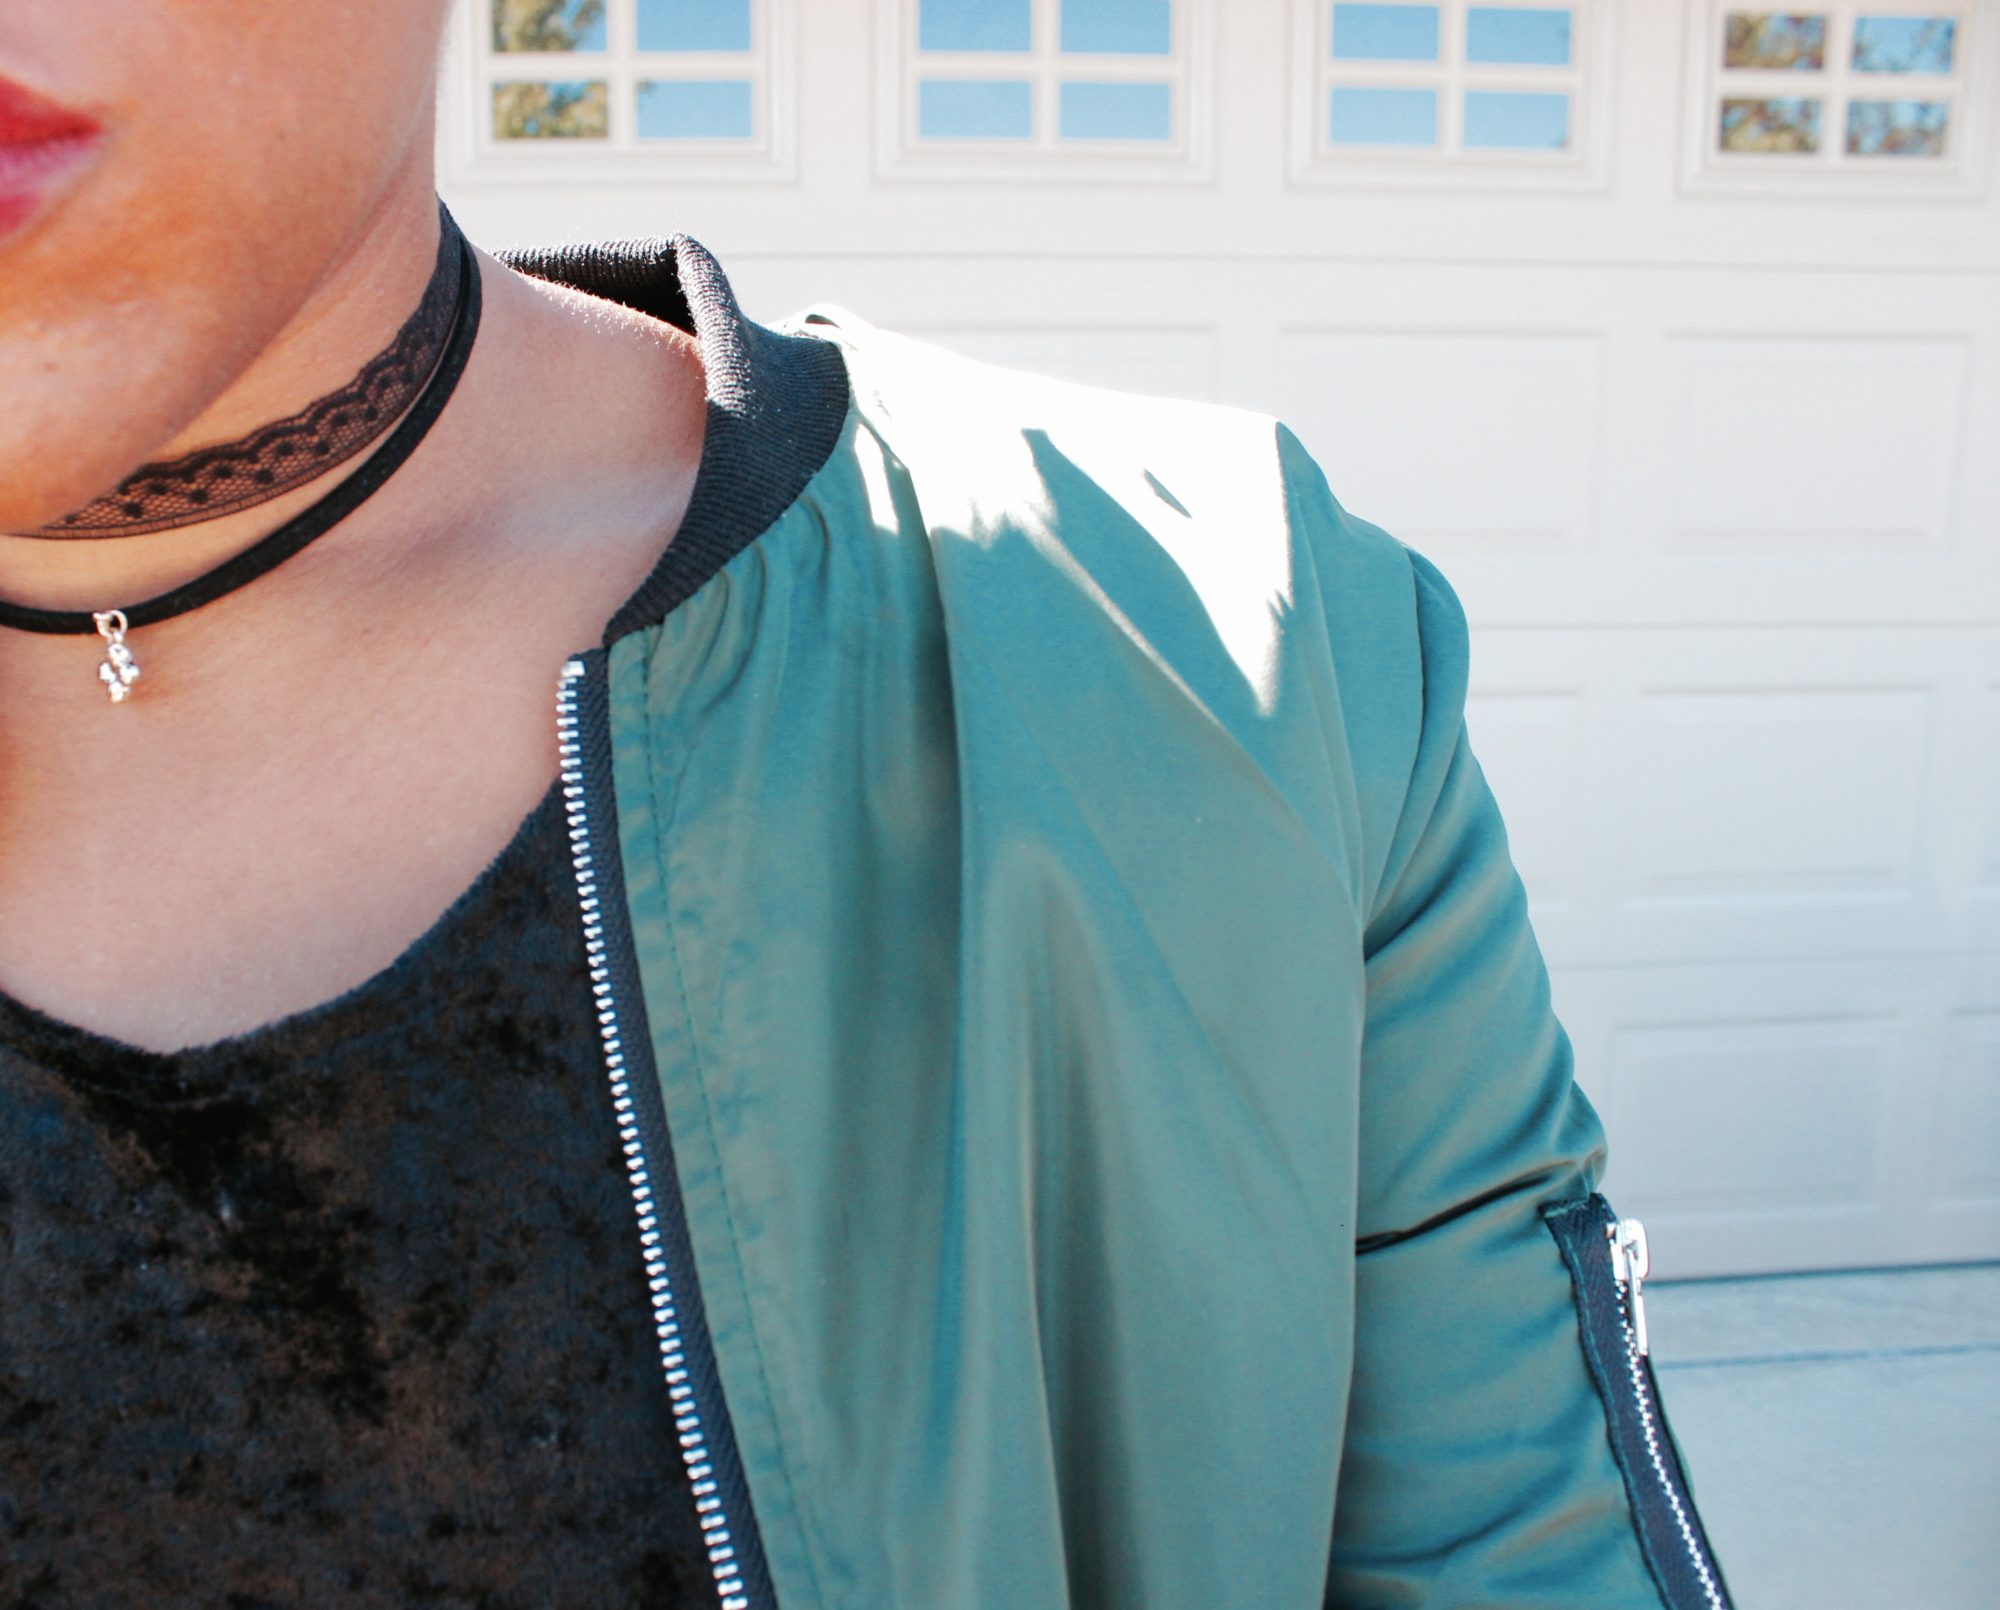 90's fashion choker necklace bomber jacket